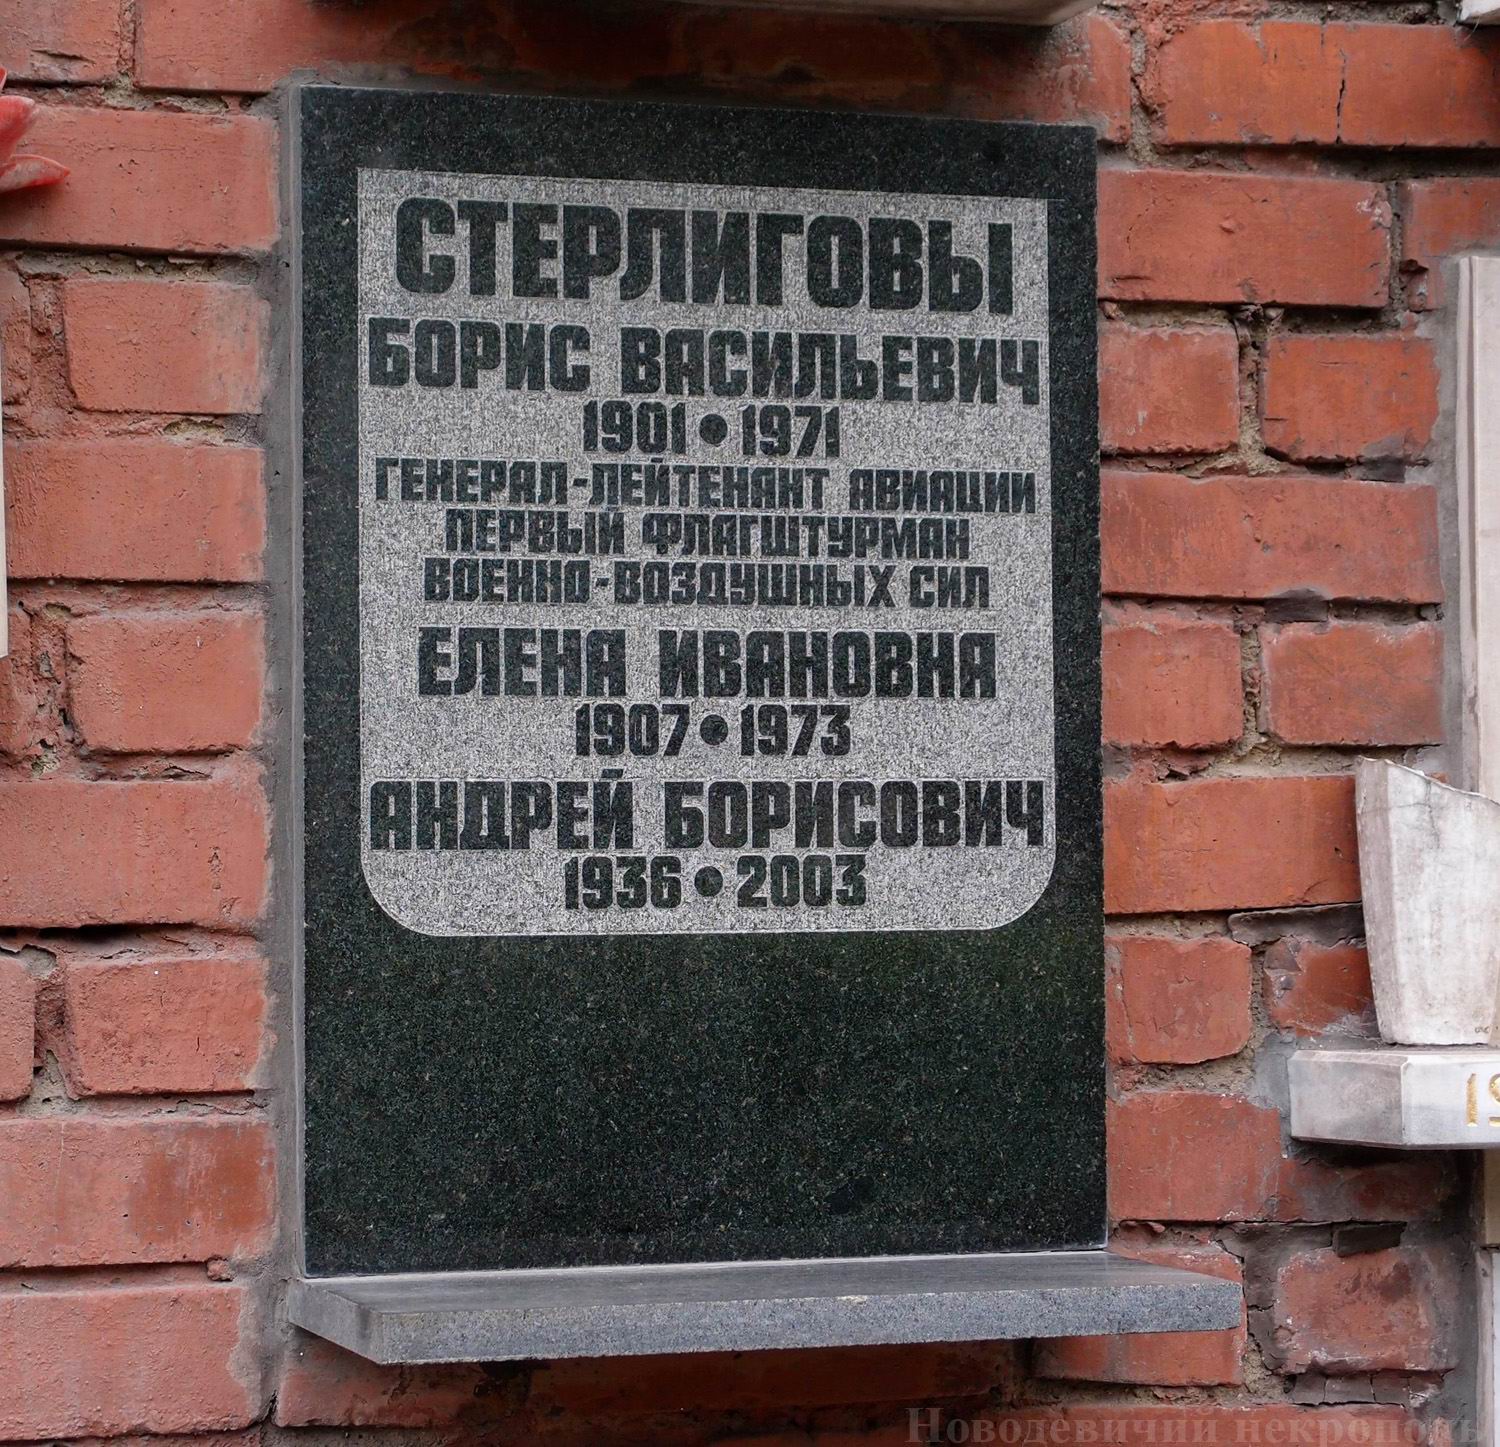 Плита на нише Стерлигова Б.В. (1901–1971), на Новодевичьем кладбище (колумбарий [135]–84–3).